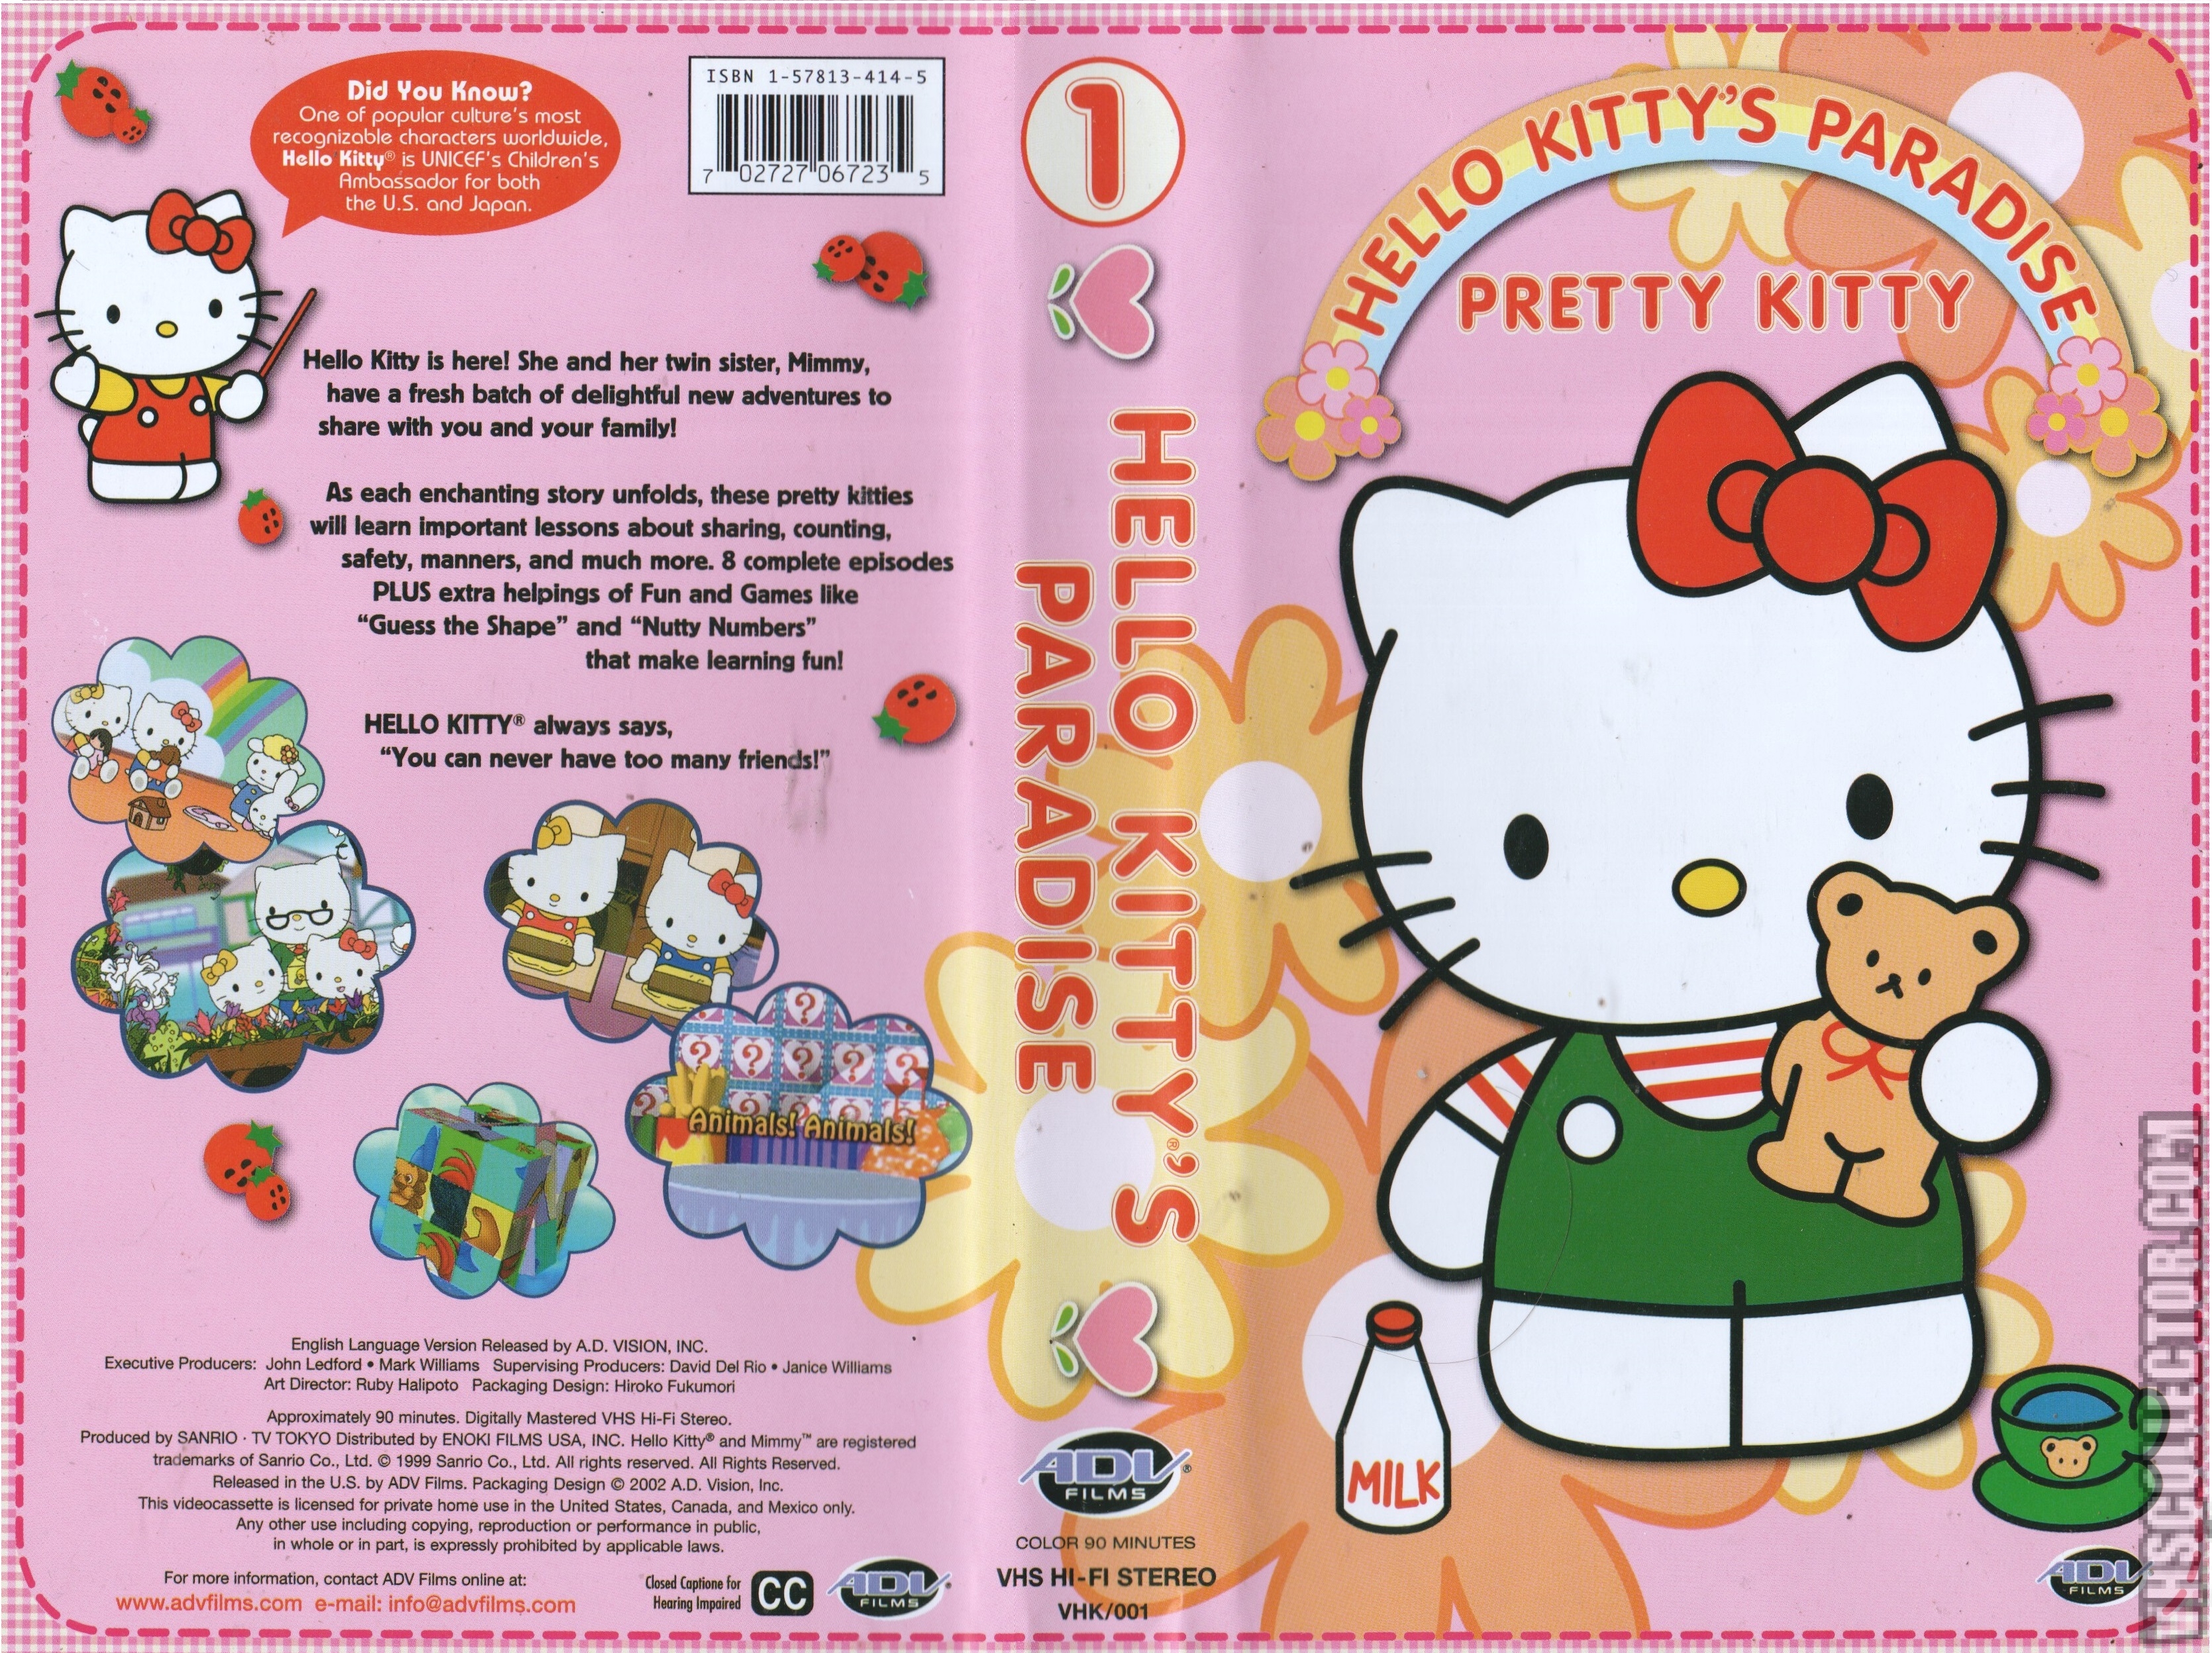  Hello  Kitty  s Paradise Volume 1 Pretty Kitty  